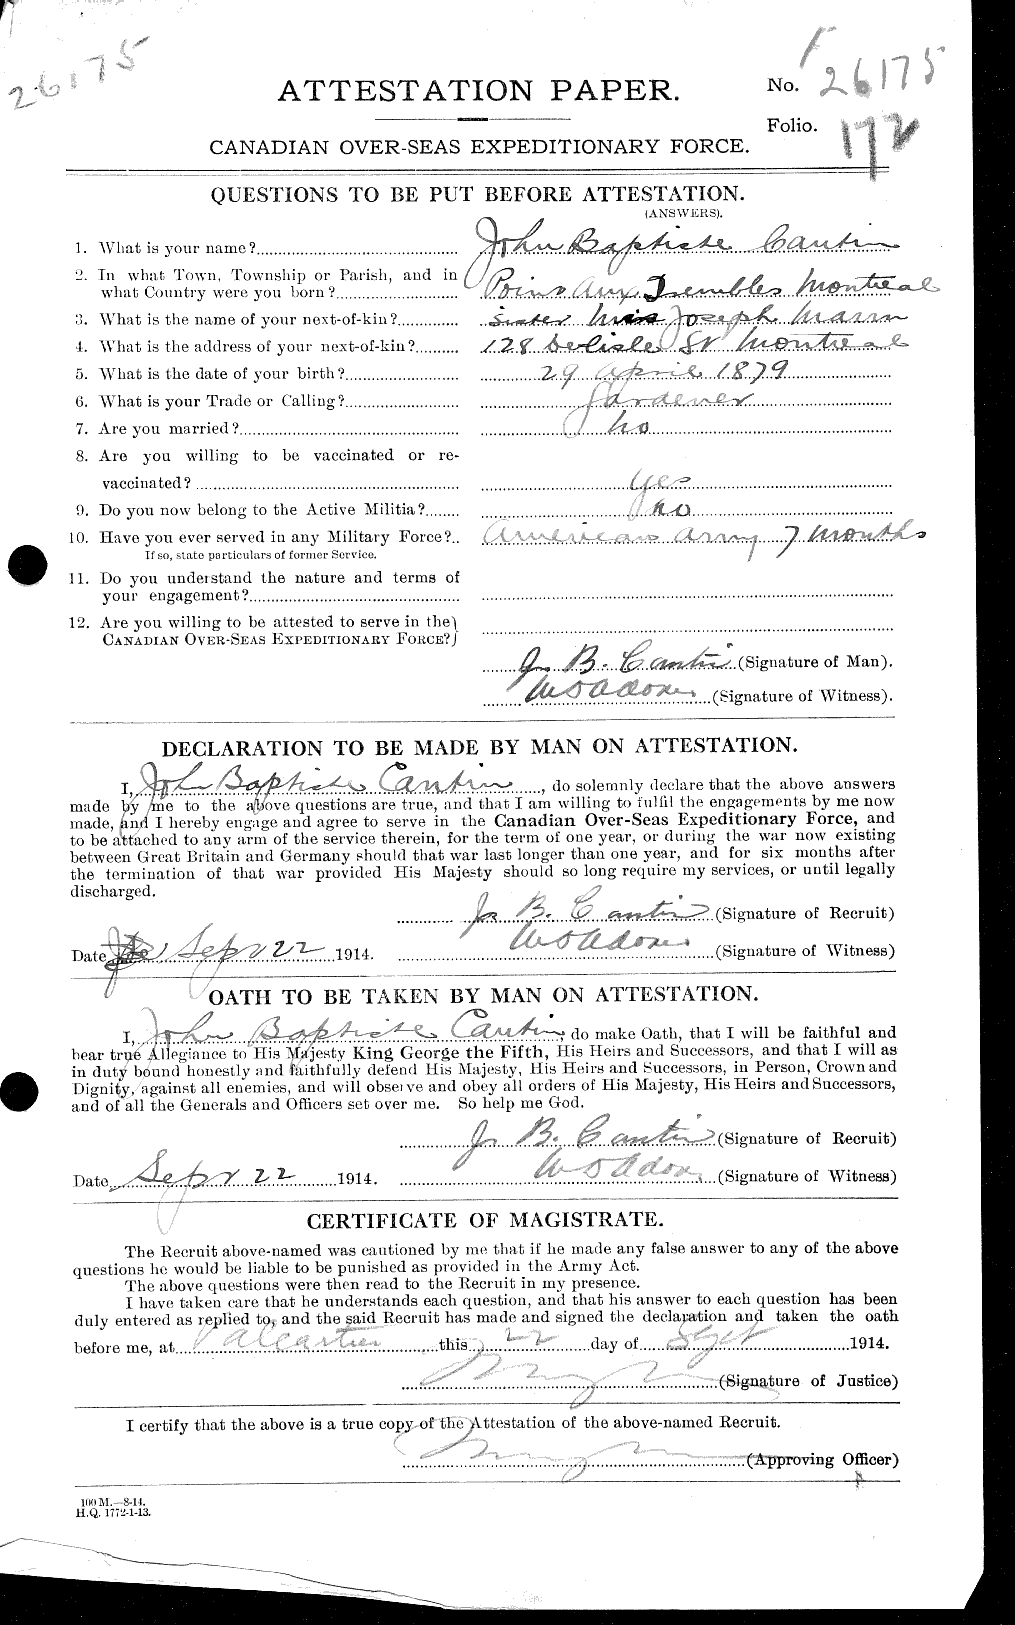 Dossiers du Personnel de la Première Guerre mondiale - CEC 009058a